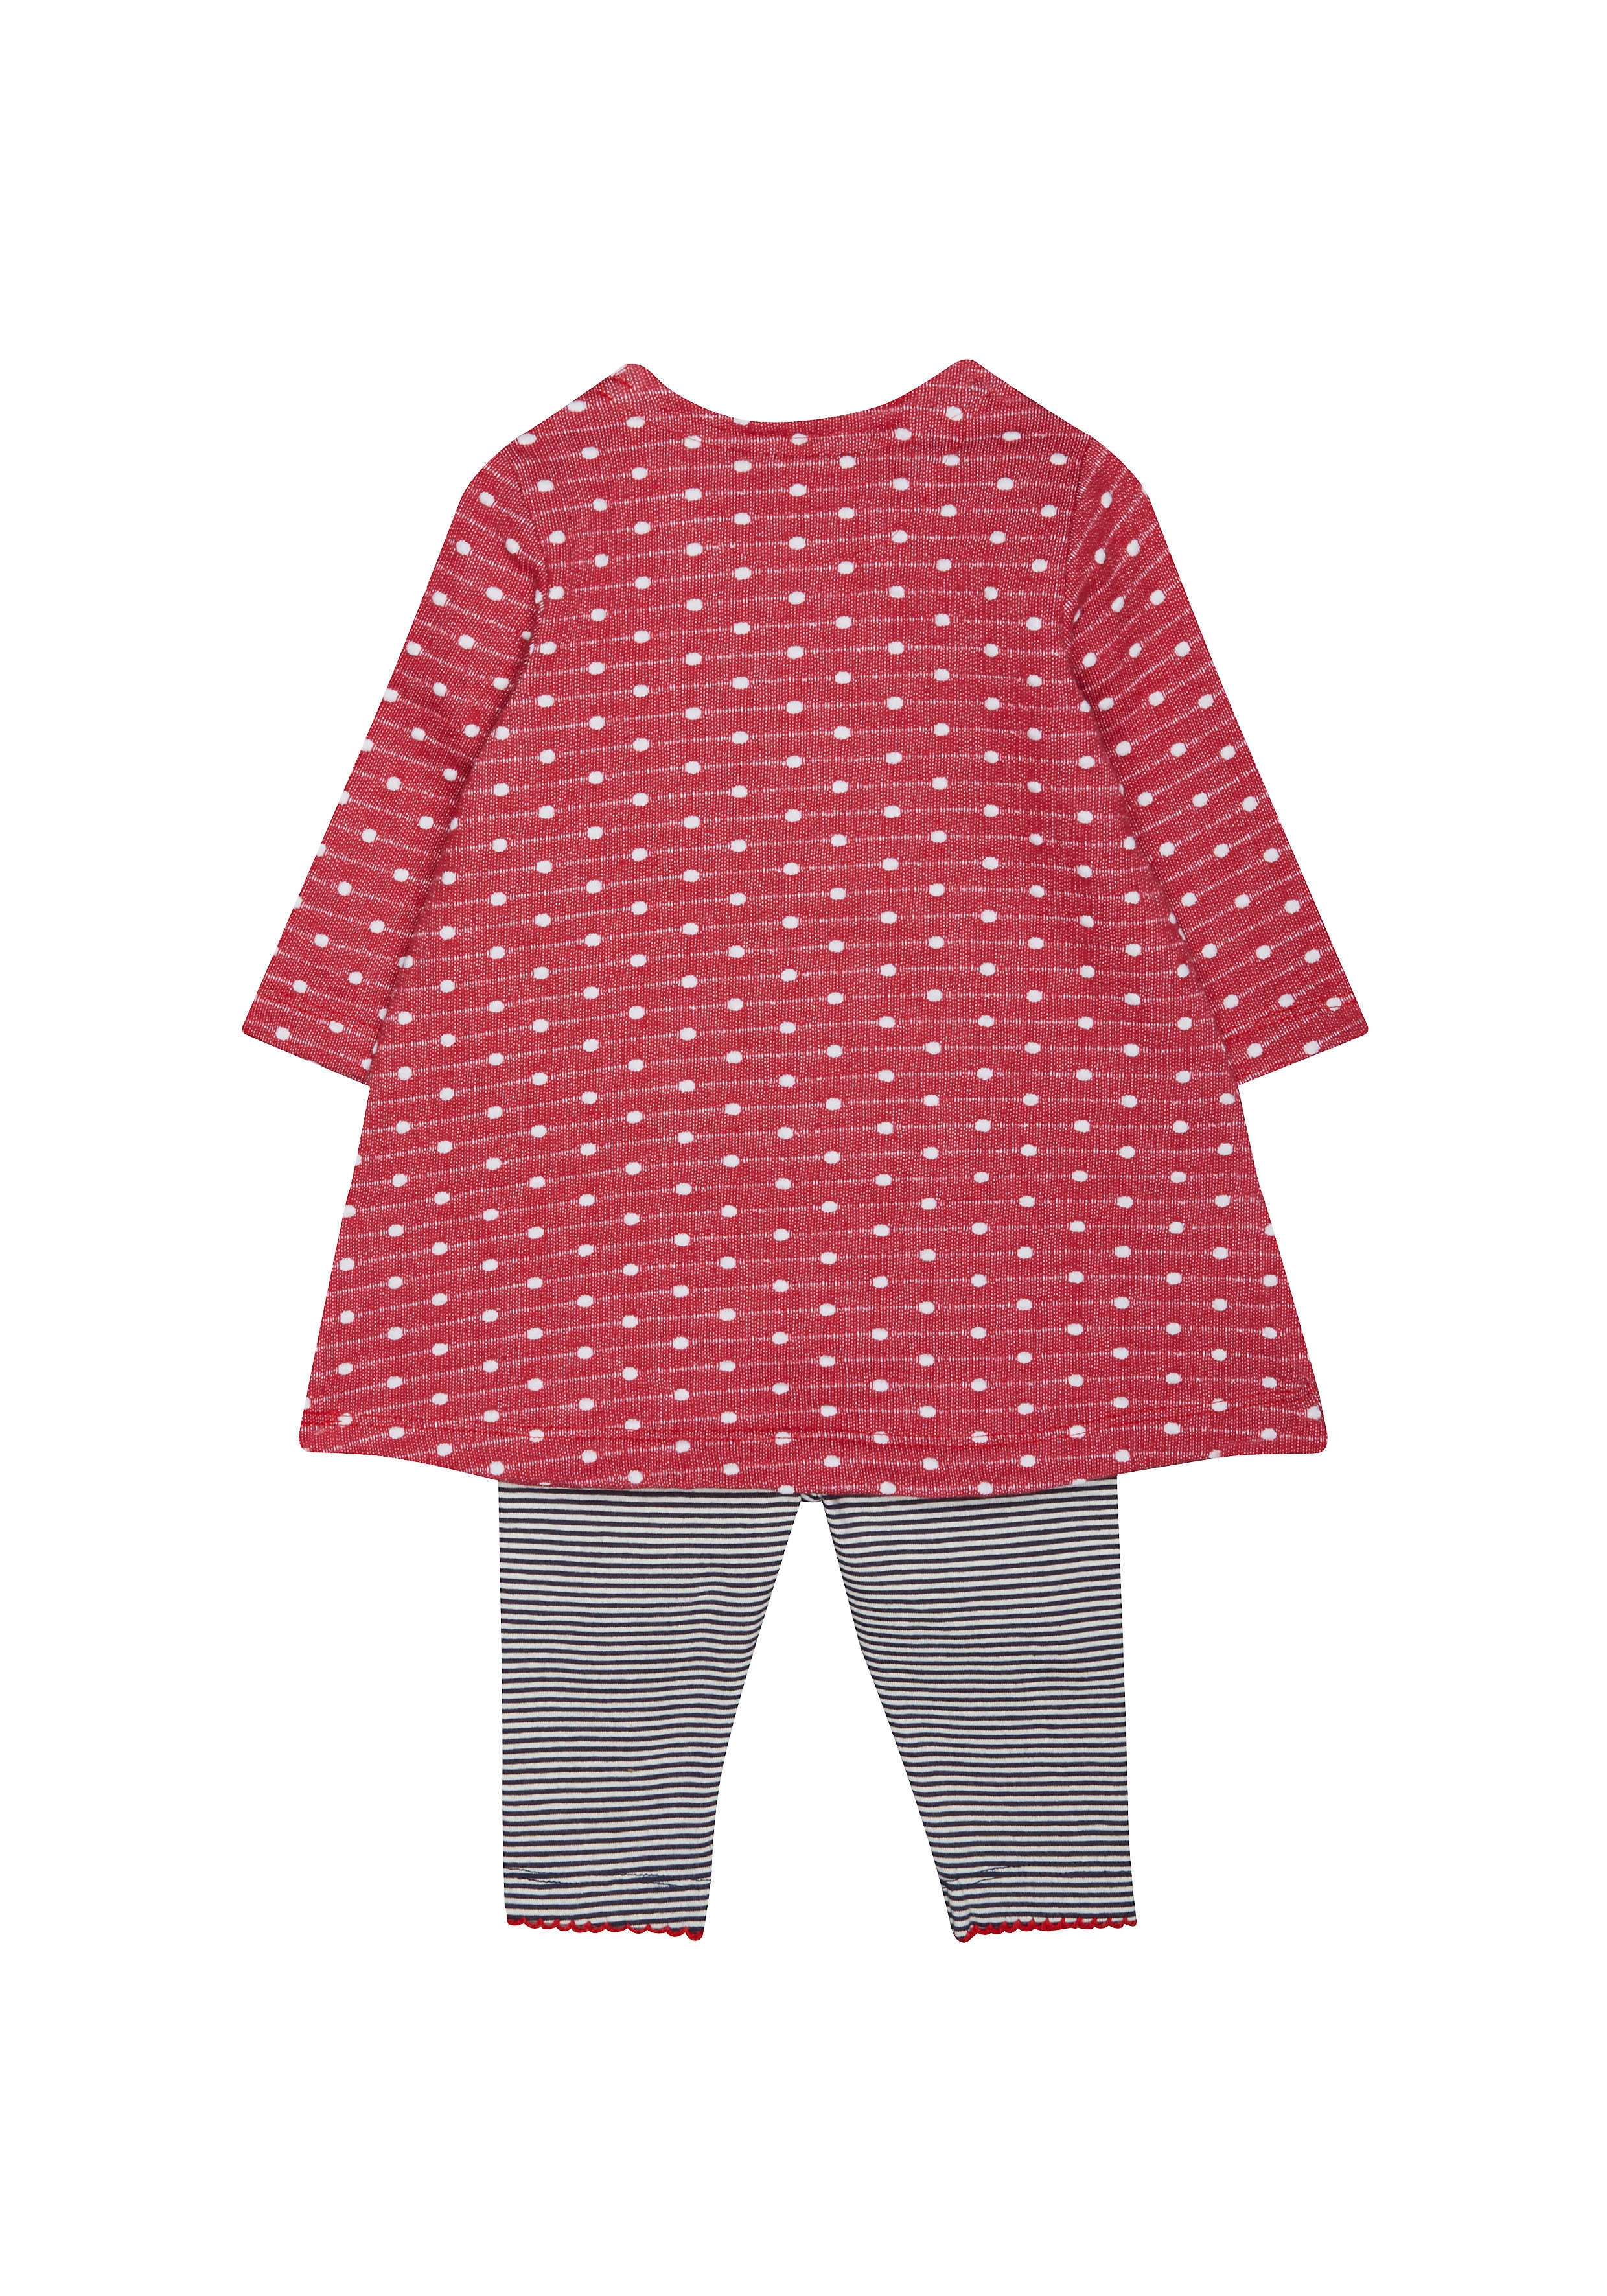 Mothercare | Girls Full Sleeves Dress And Legging Set Polka Dot Print - Red 1